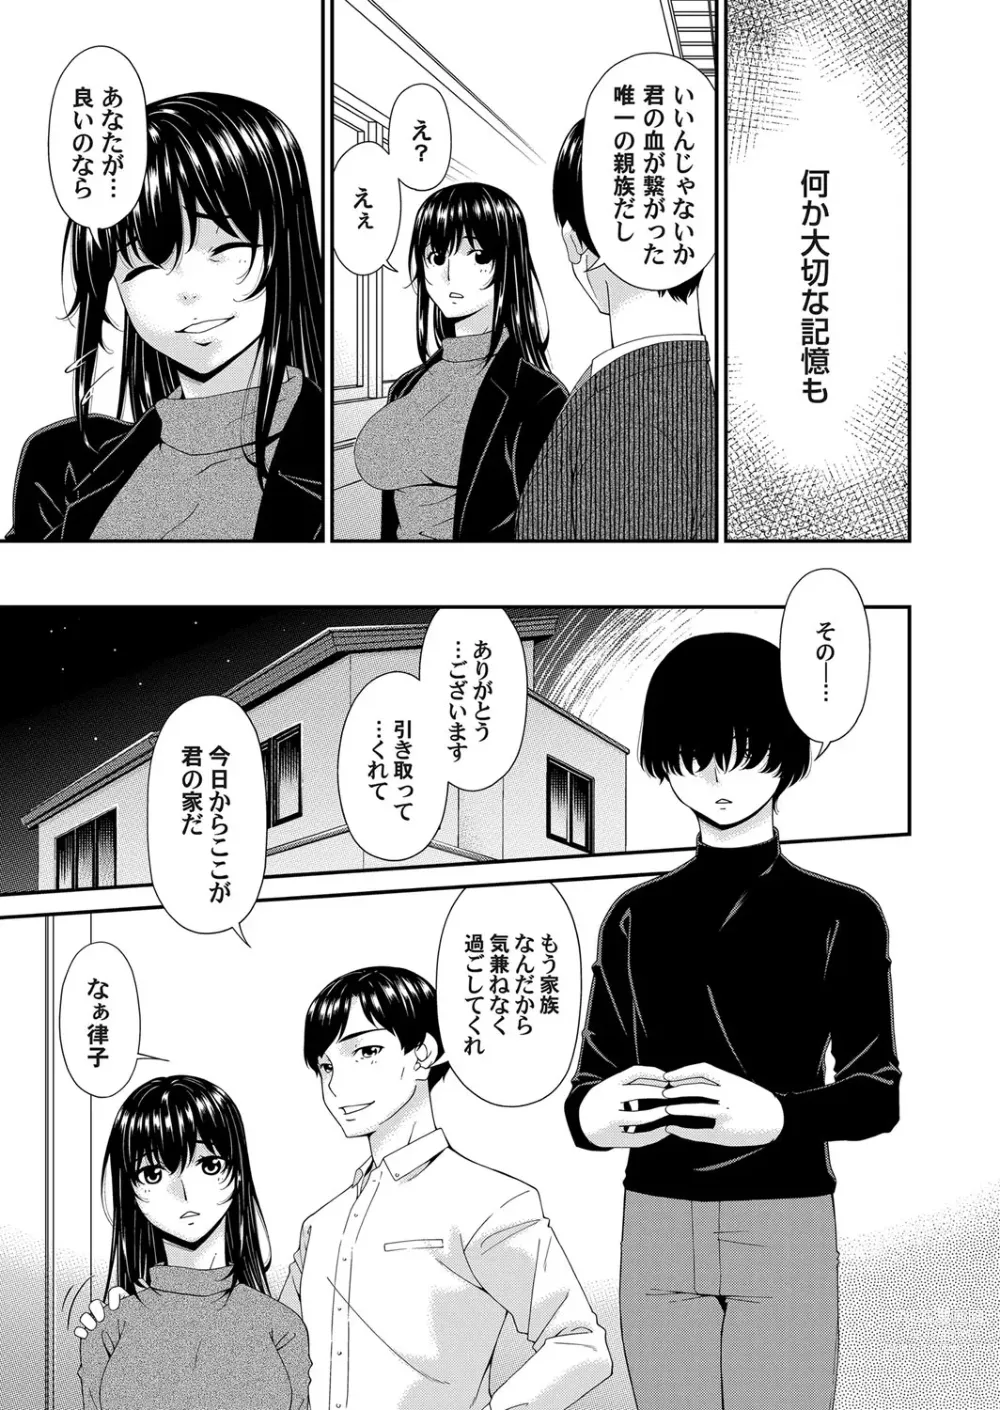 Page 7 of manga Saiin Kazoku